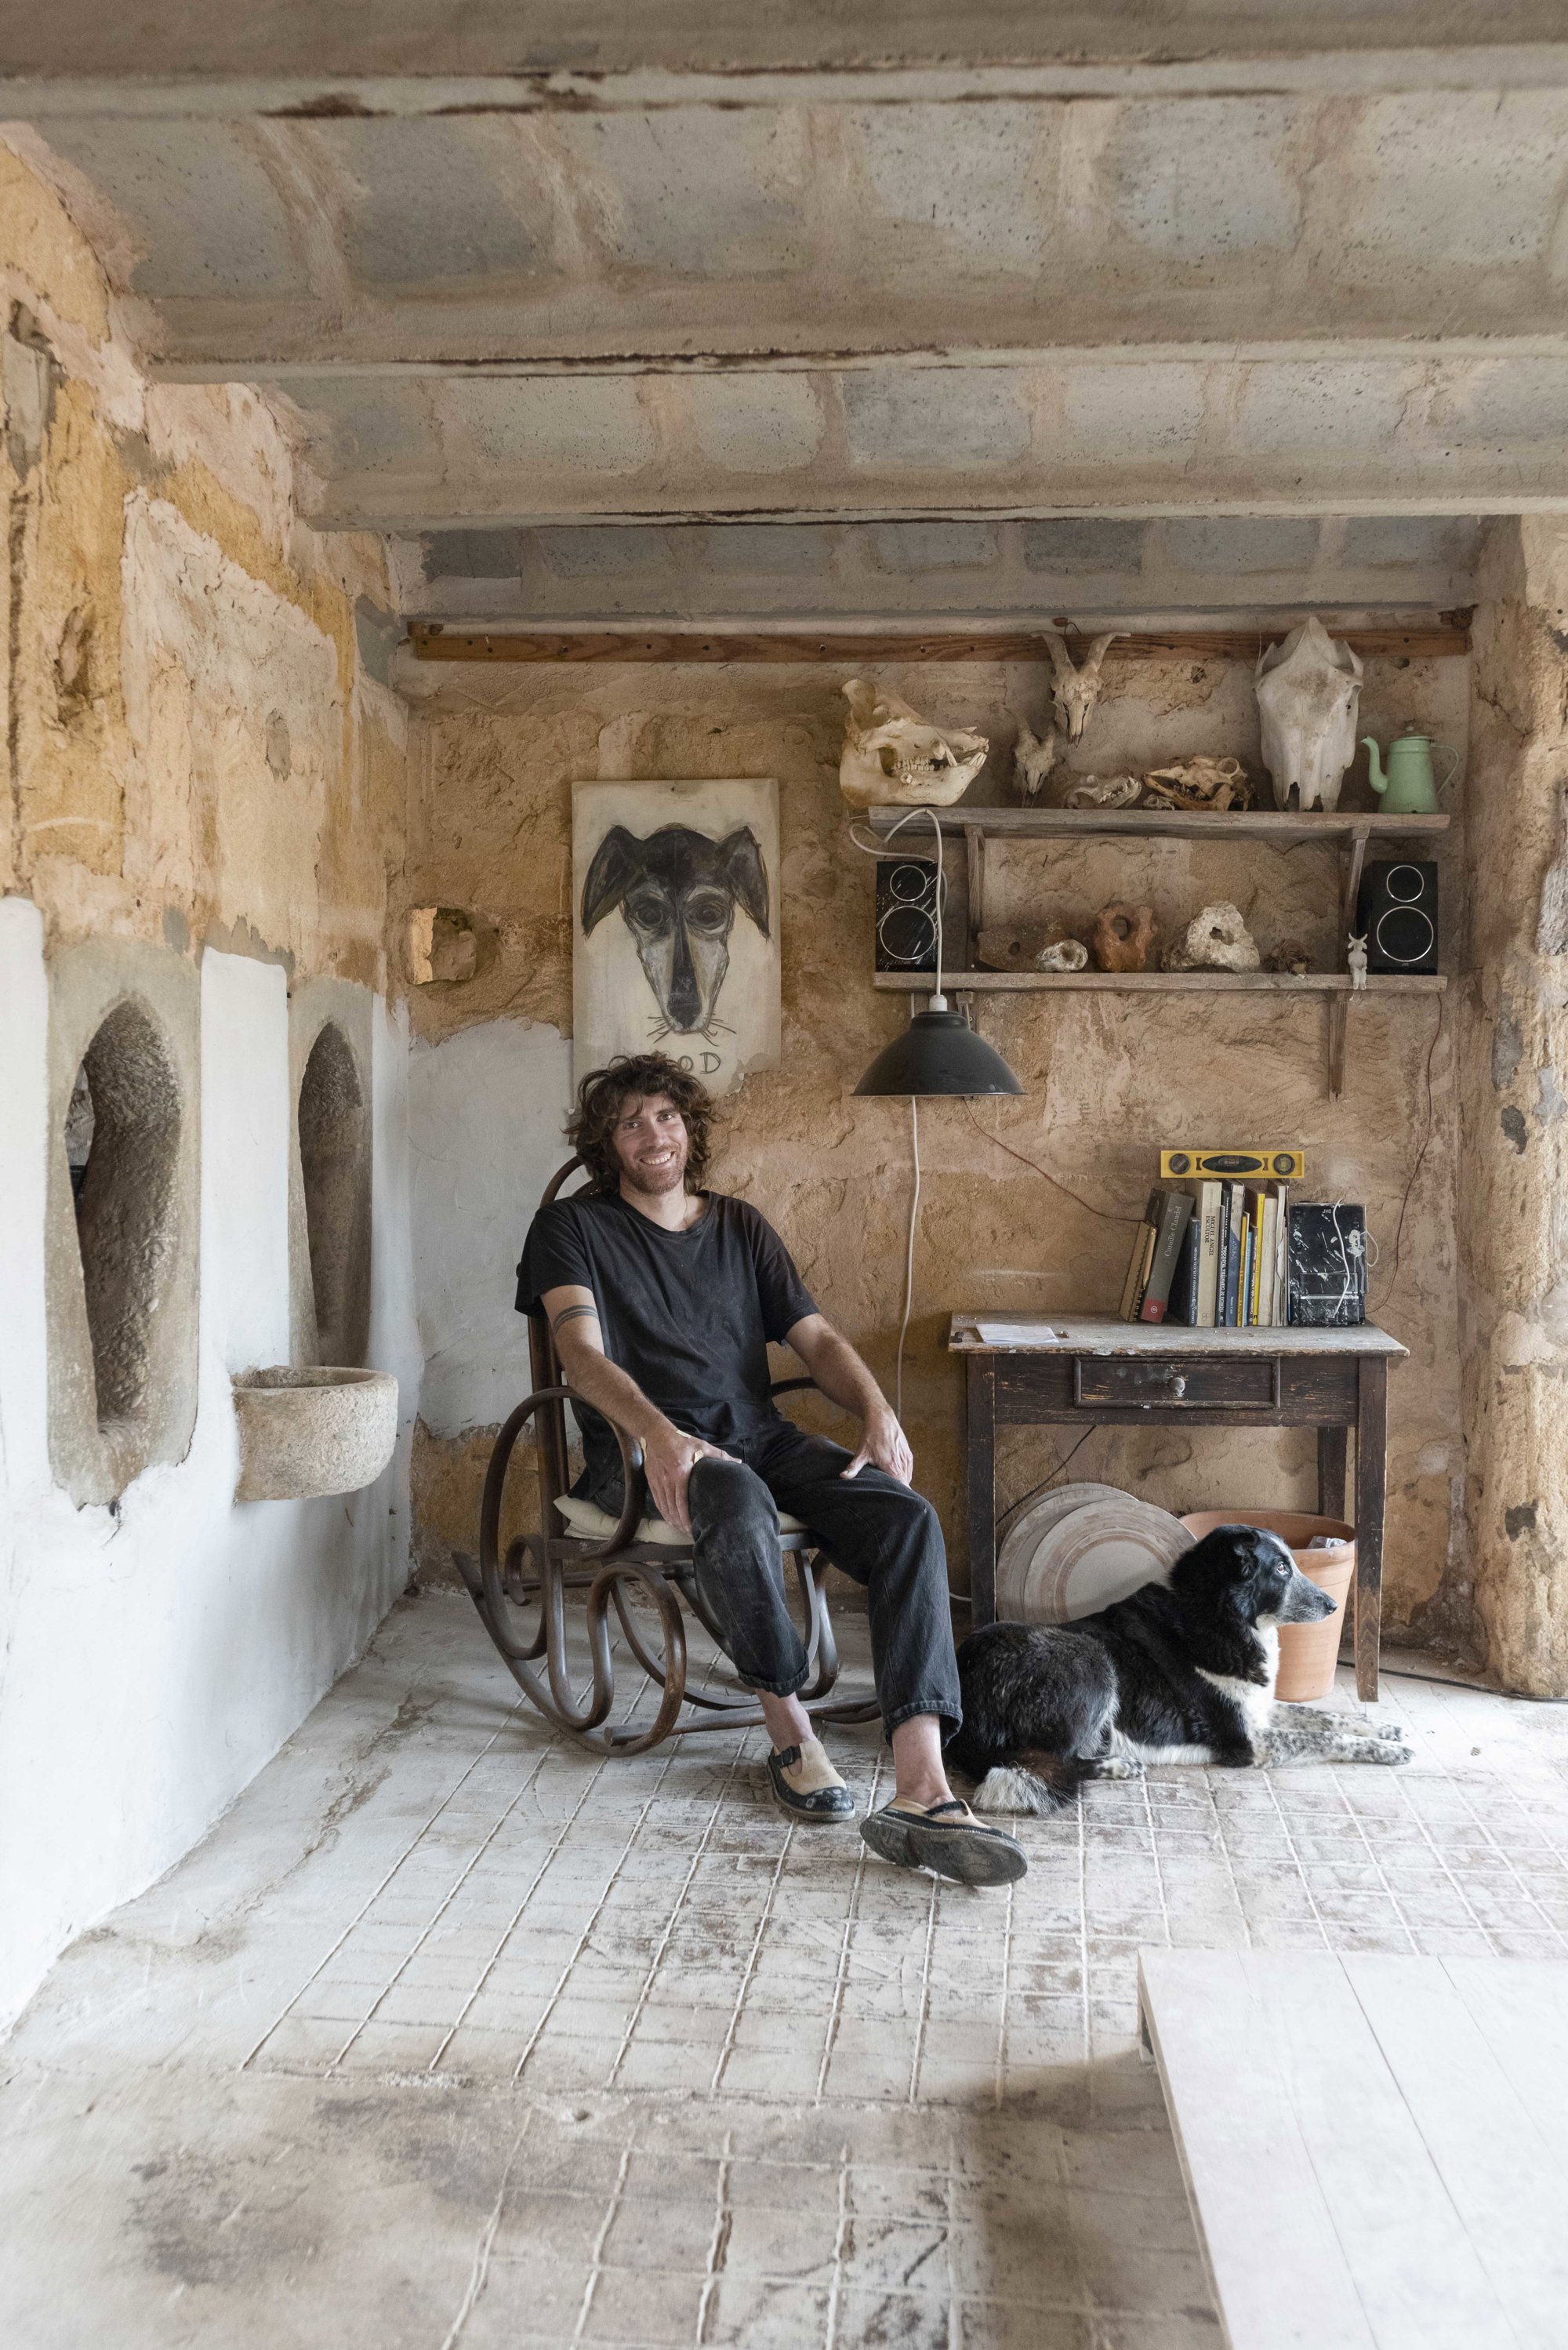 Jaume con su perra Tota (detrás, dibujada por Roig) en su taller y cráneos de vacas, ovejas, cerdos y zorros